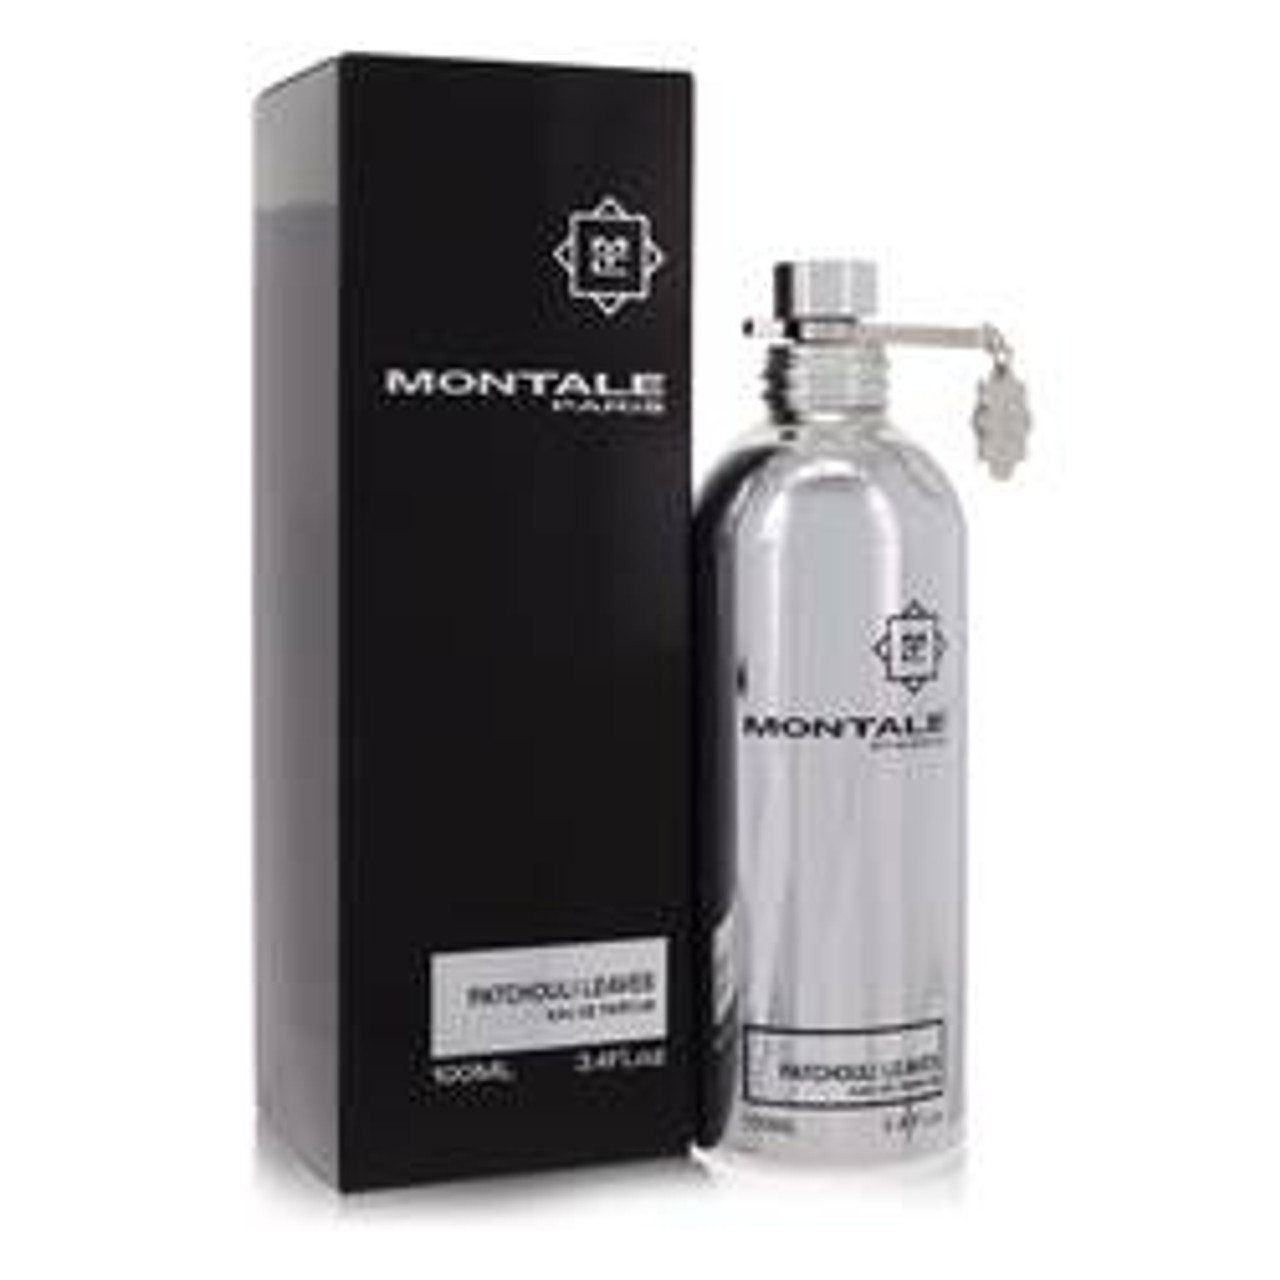 Montale Patchouli Leaves Perfume By Montale Eau De Parfum Spray (Unisex) 3.4 oz for Women - *Pre-Order